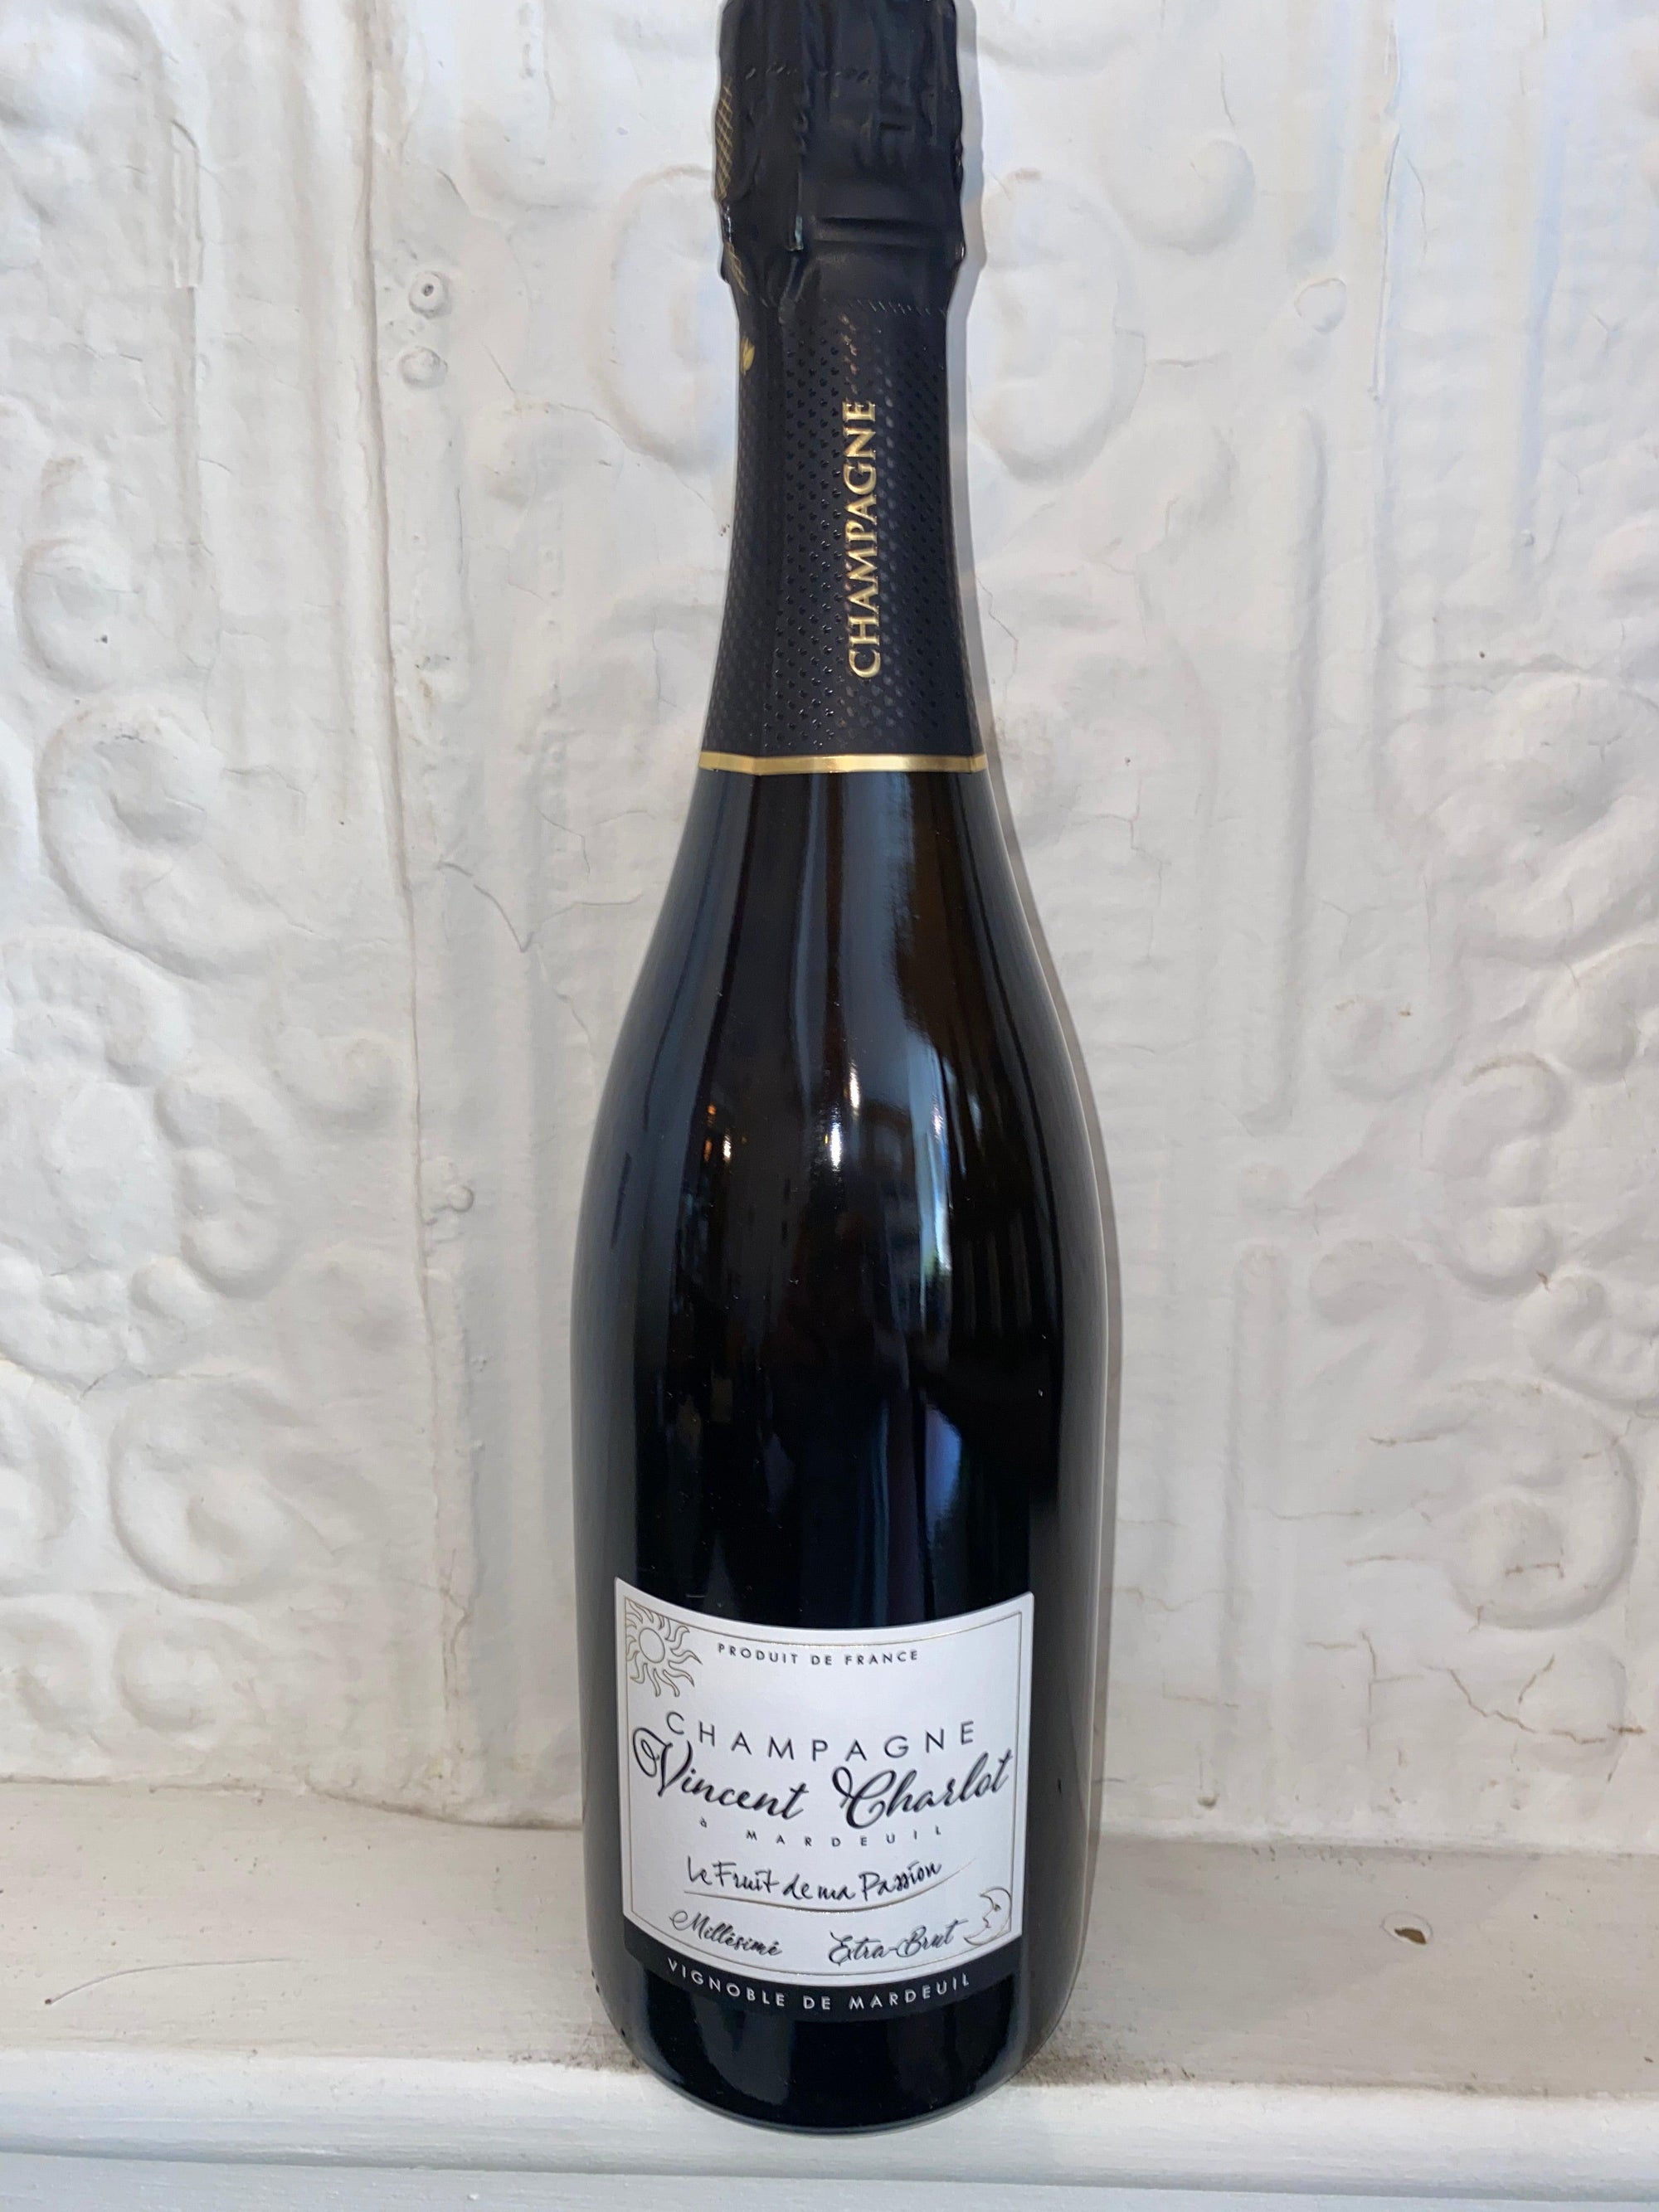 Fruit de Ma Passion, Vincent Charlot 2018 (Champagne, France)-Wine-Bibber & Bell